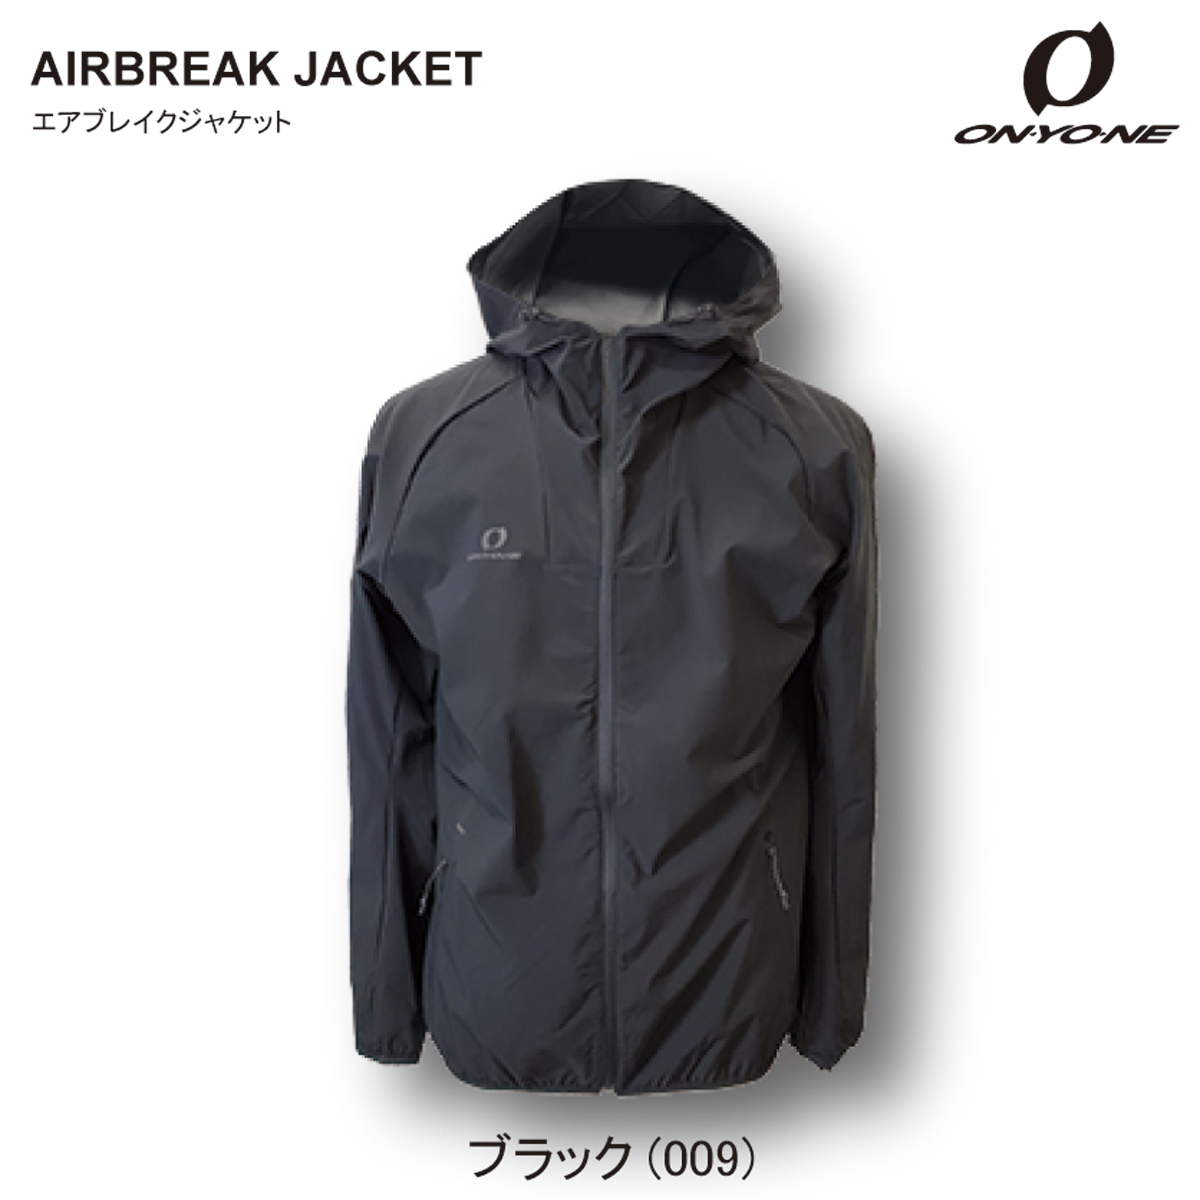 【美品】オンヨネ インナー ジャケット インシュレーションジャケット ブラック